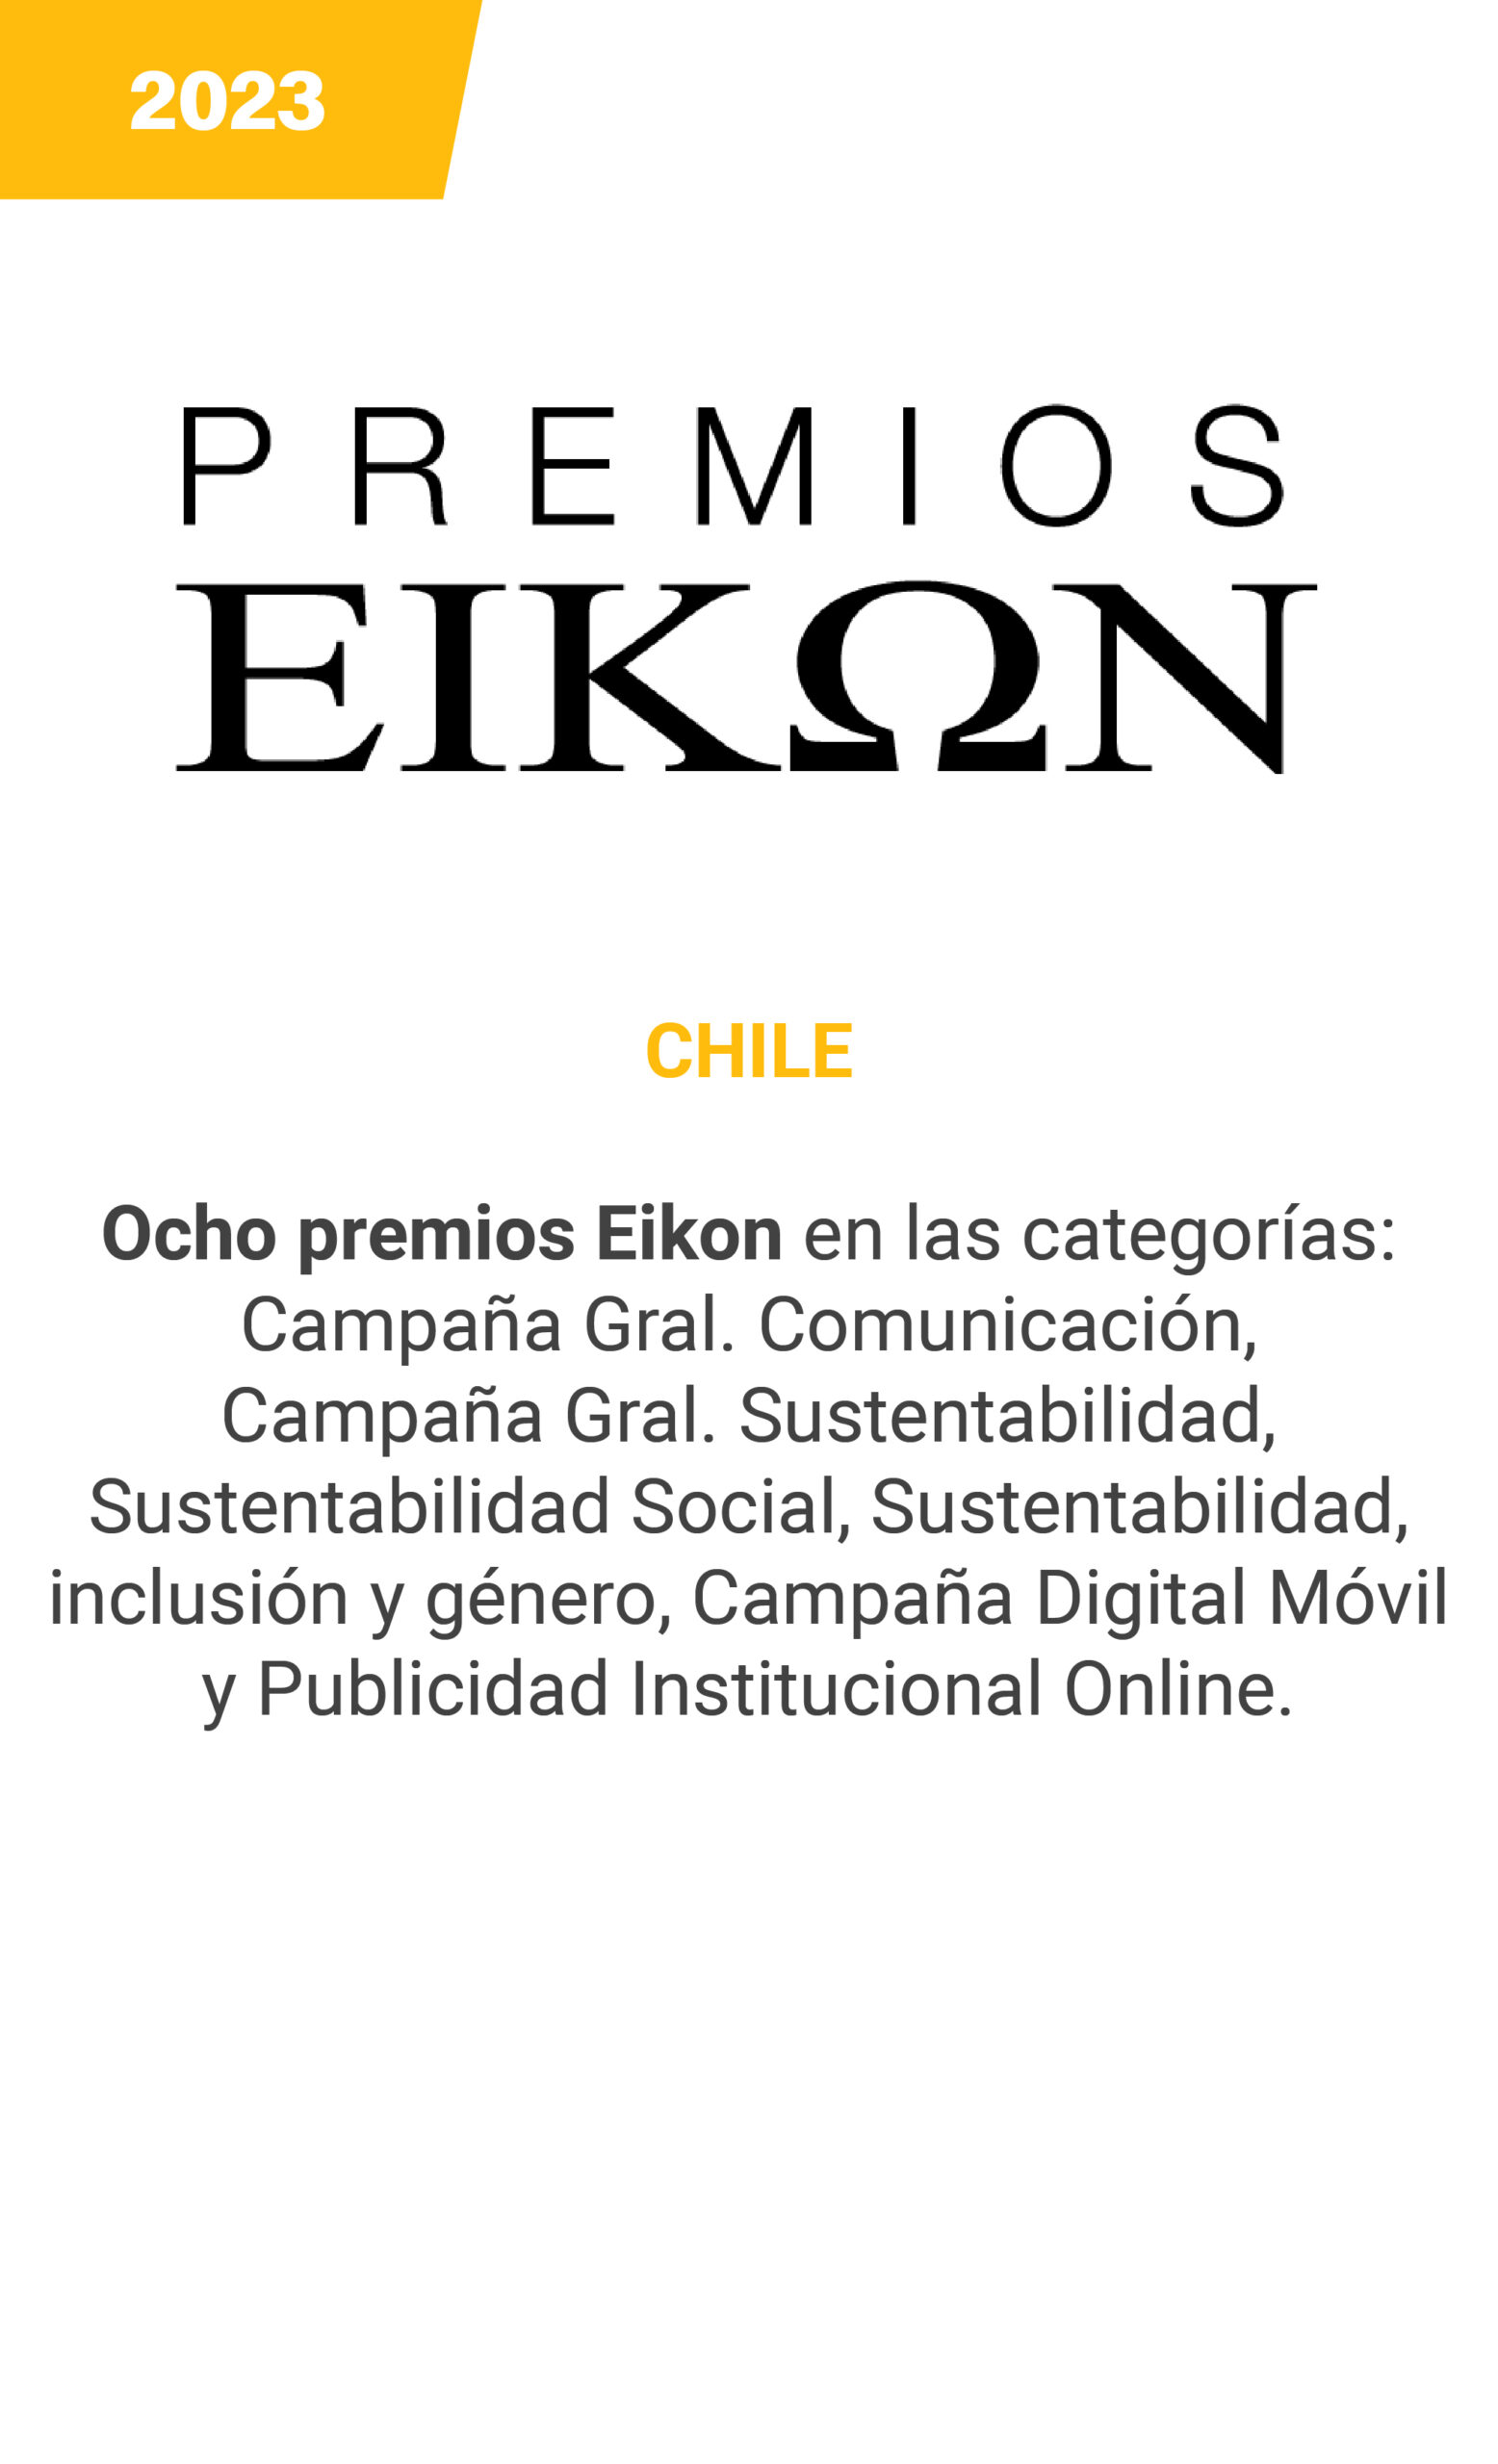 Eikon - Chile 2023 - mobile